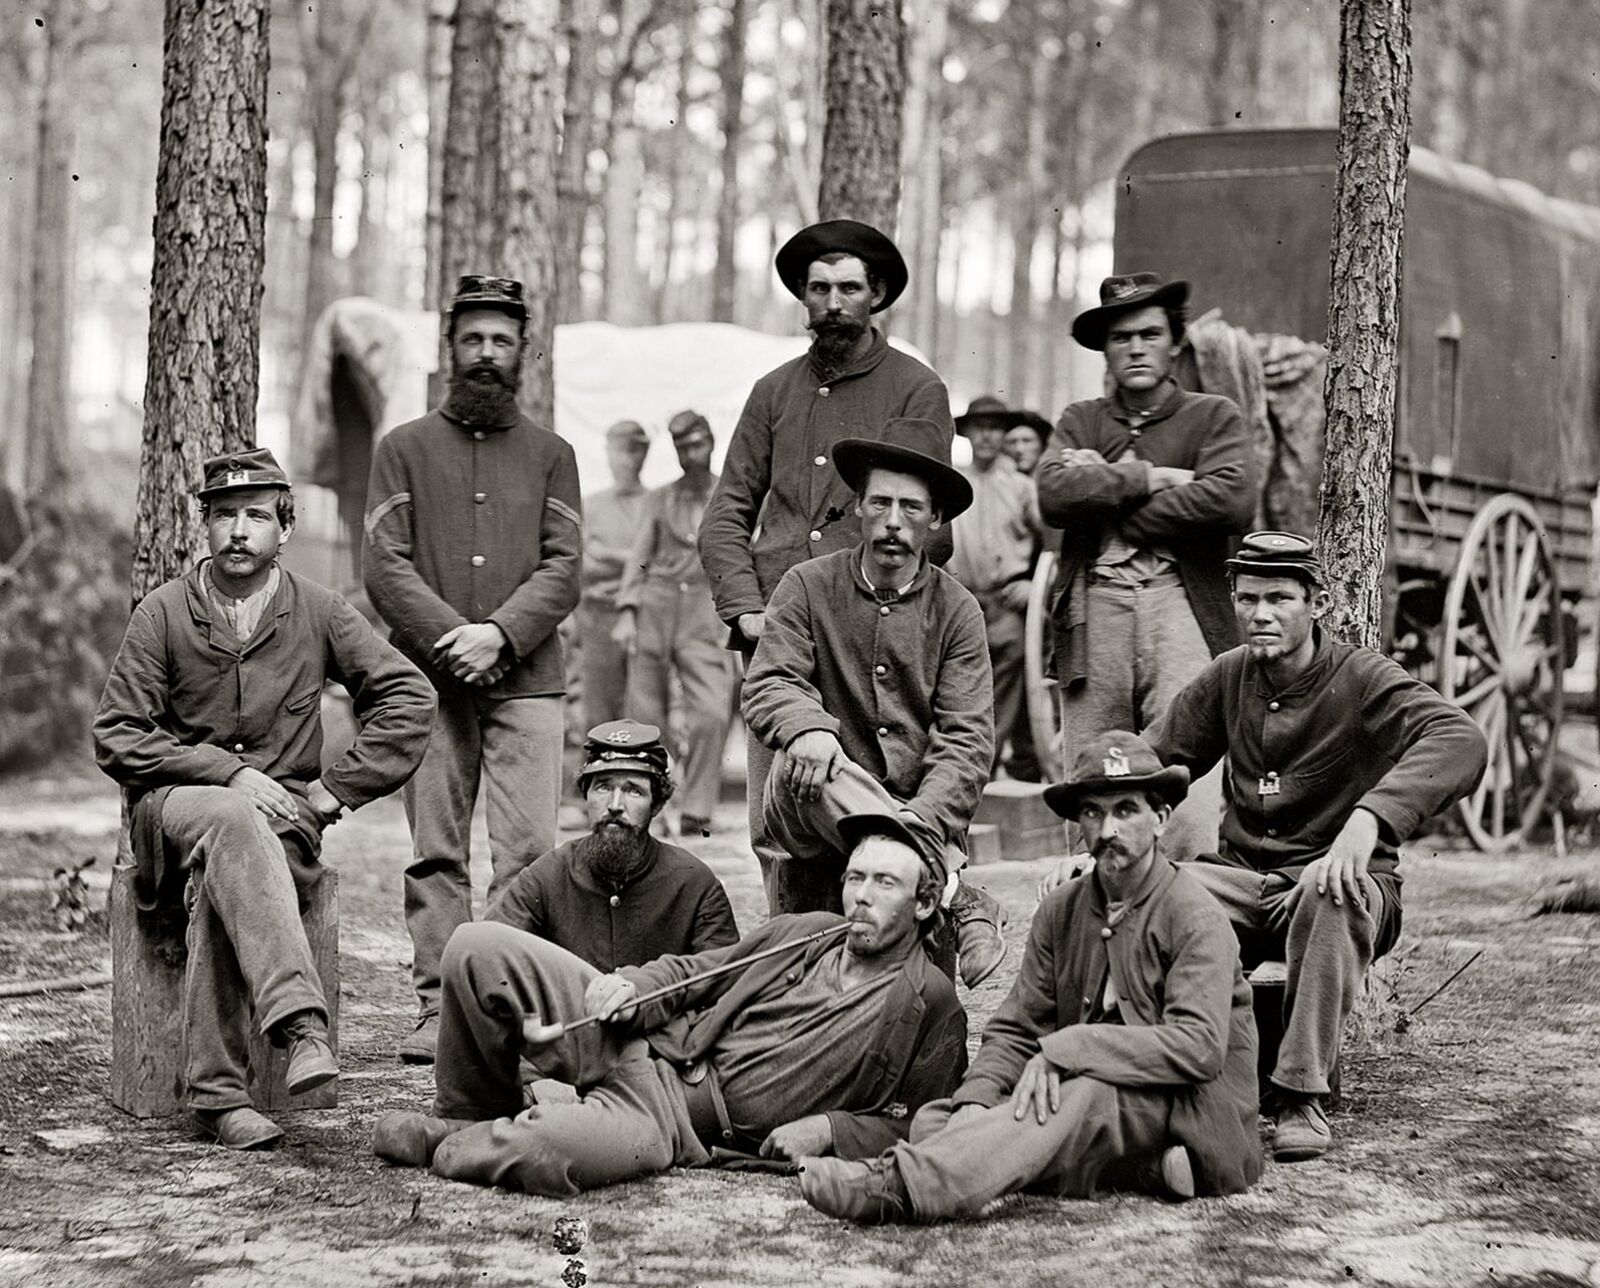 1864 UNION TROOPS St Petersburg Virginia PHOTO  (196-G)